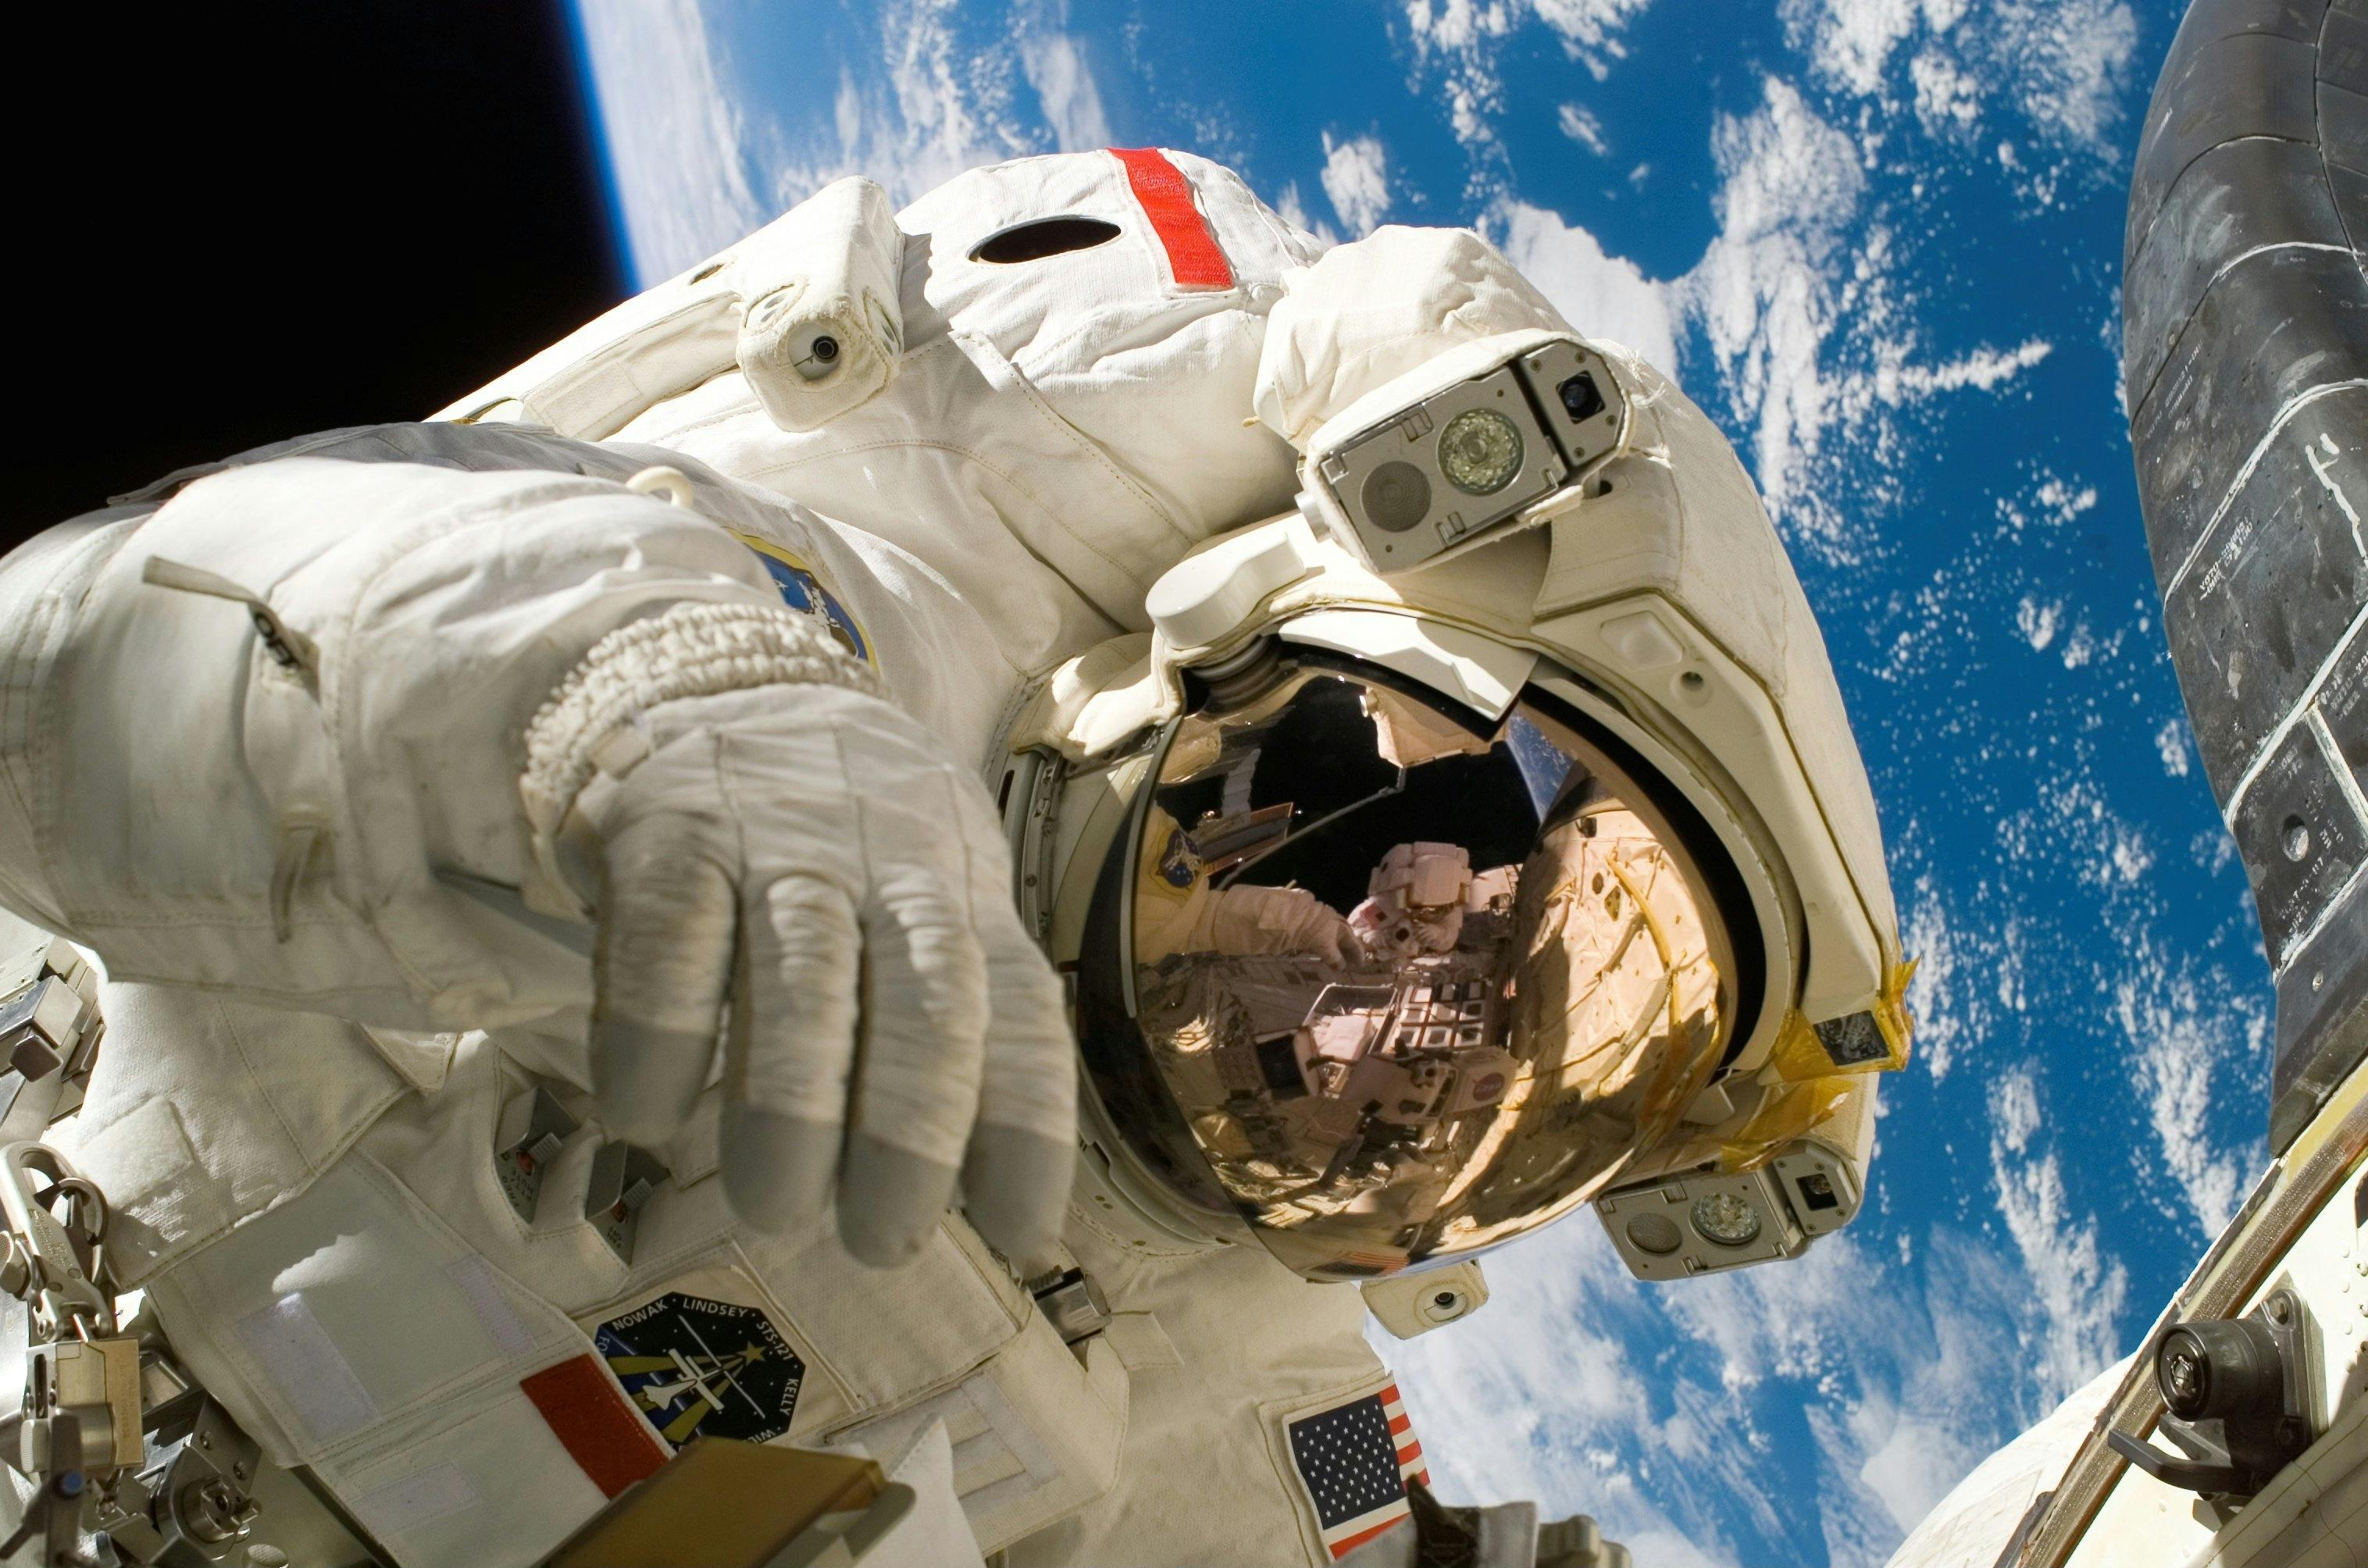 Crew-8-astronauterne går i karantæne før opsendelse til rumstationen 